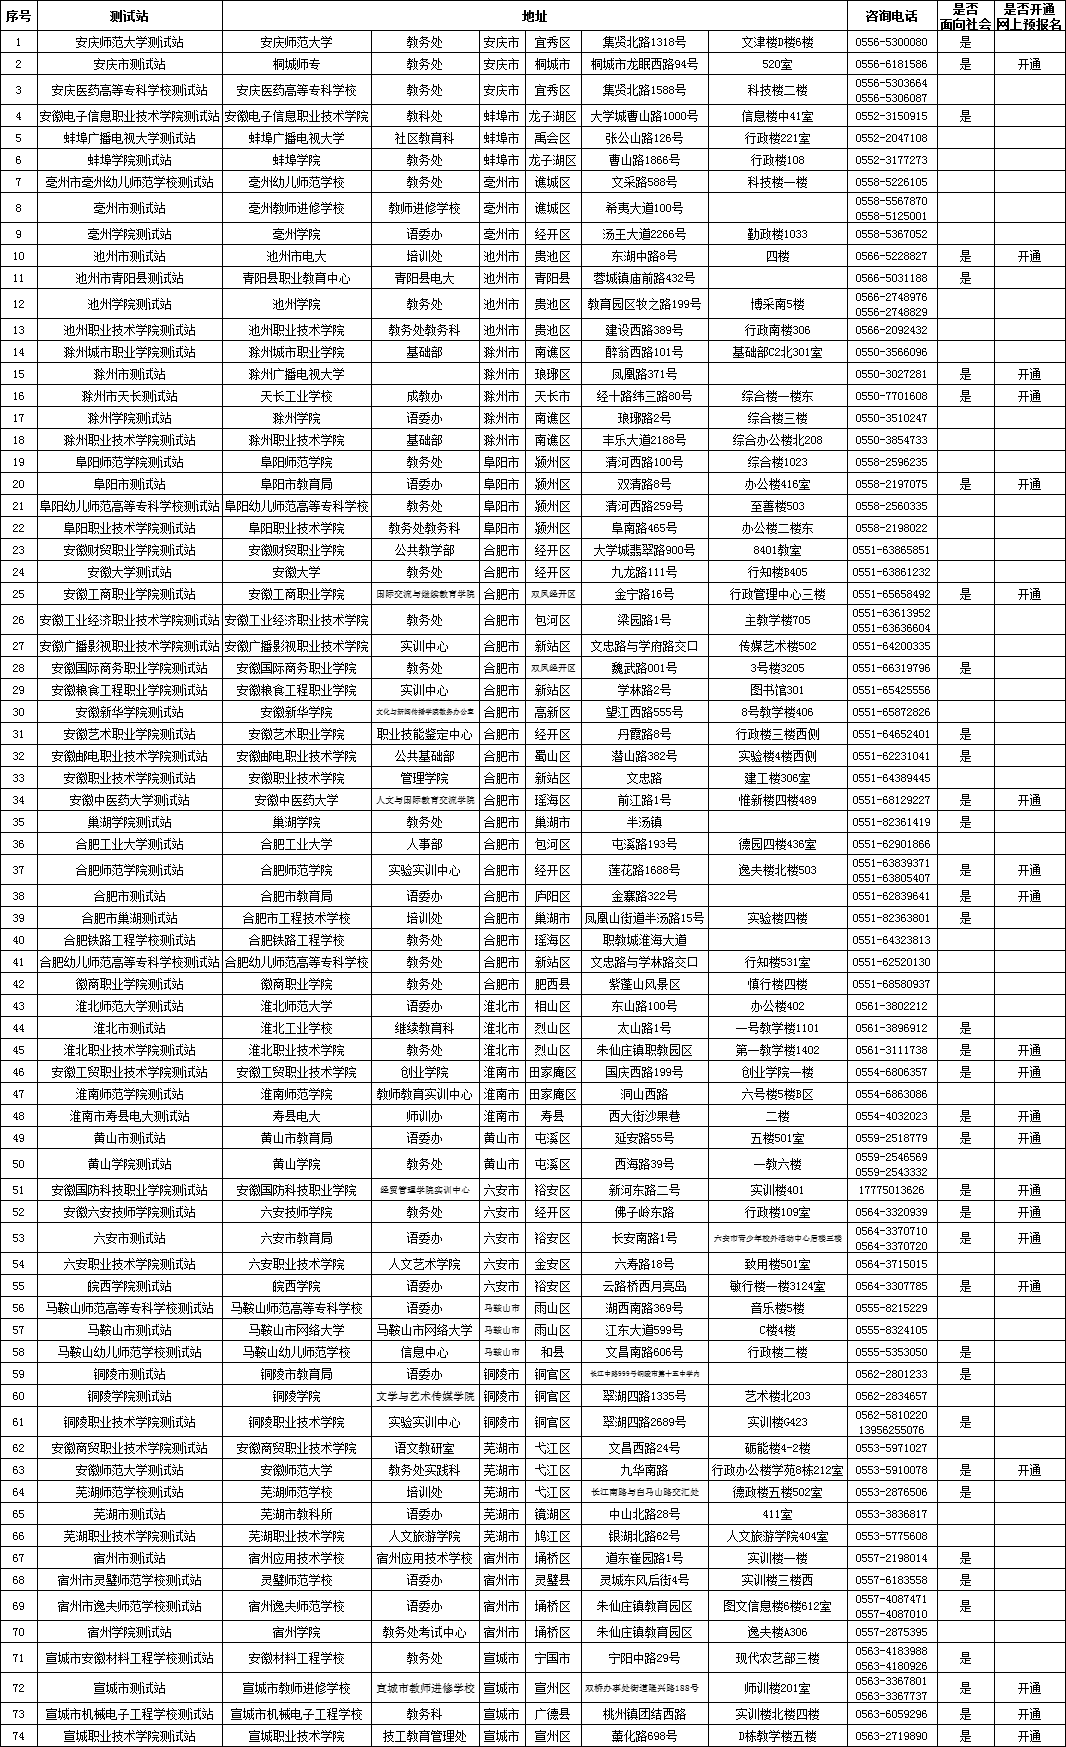 安徽省普通话测试站地点及联系方式一览表